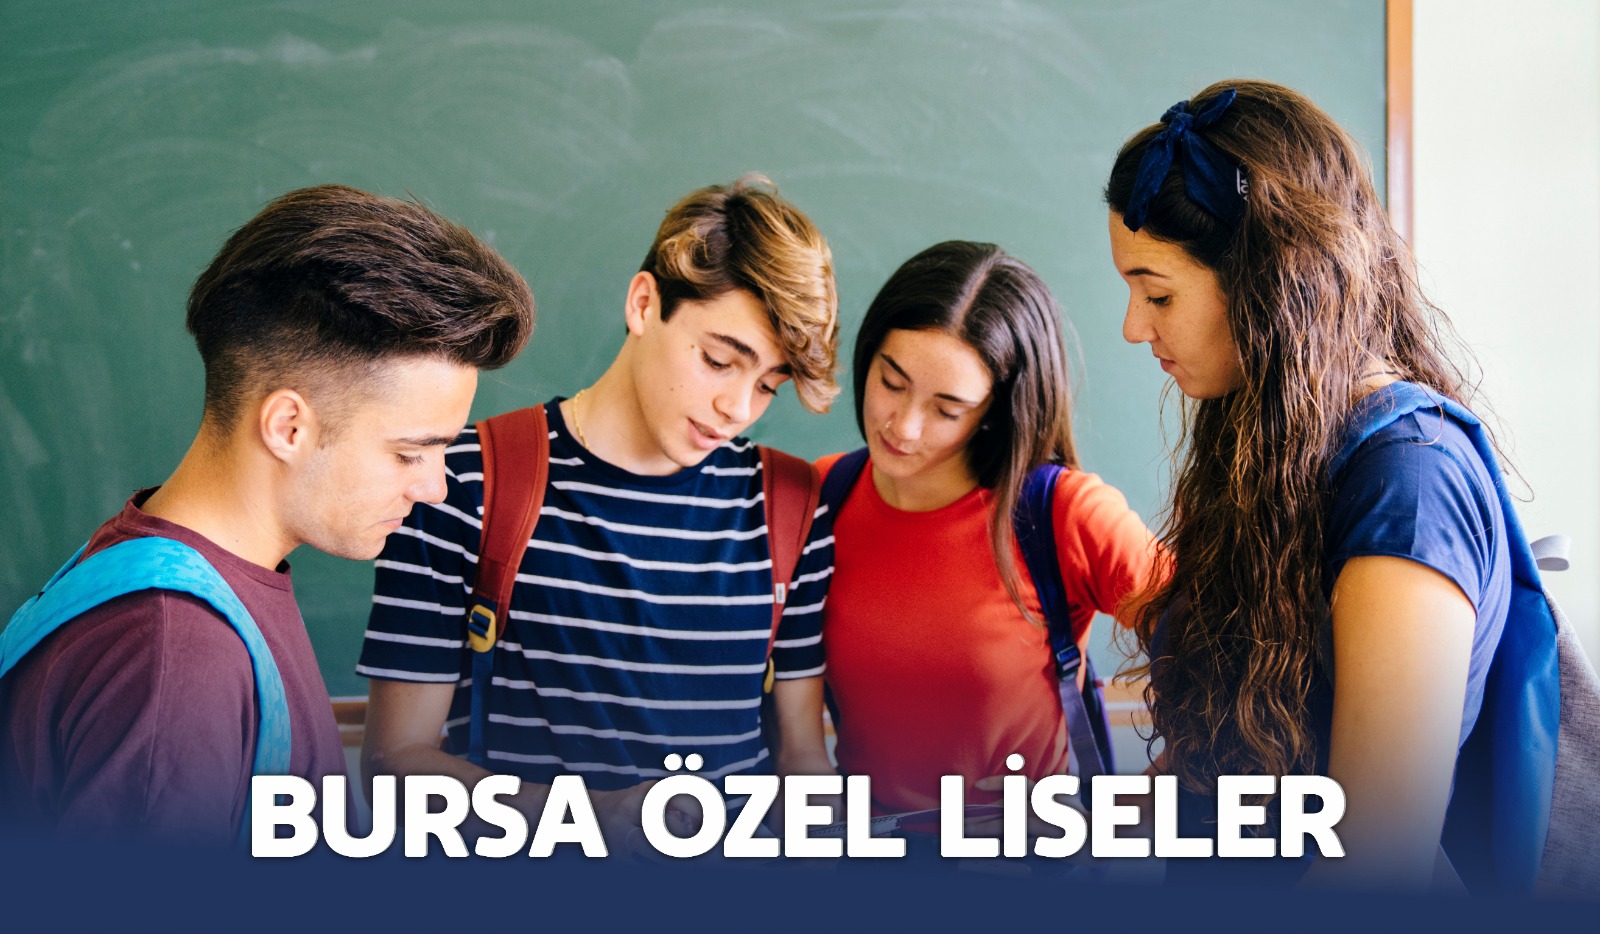 Bursa'da Bulunan Özel Liseler Listesi